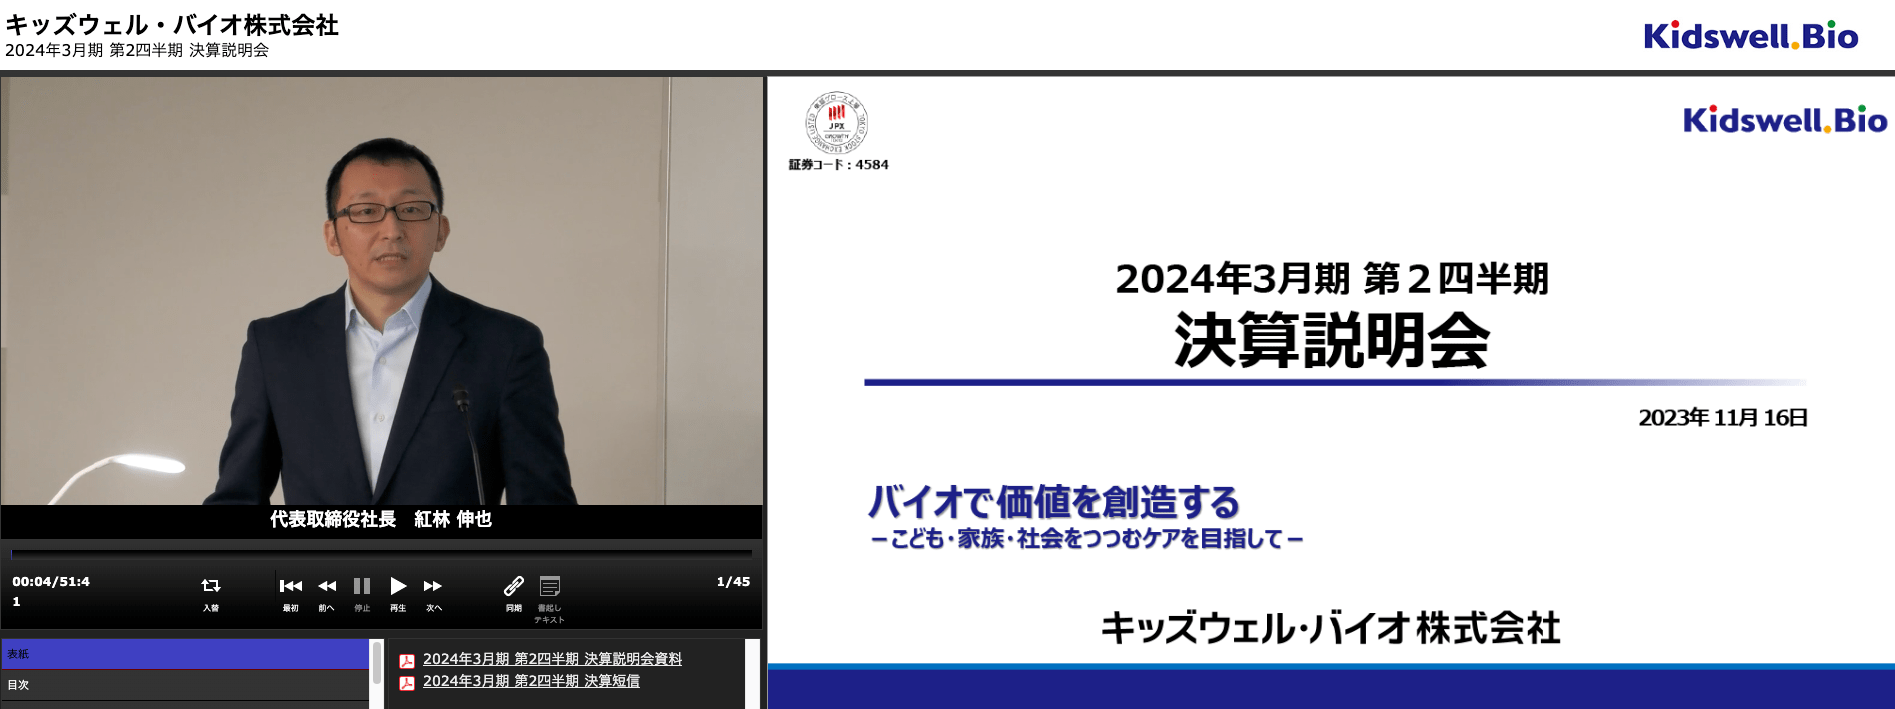 キッズウェル・バイオ株式会社 2024年3月期 第2四半期決算説明会動画 表紙